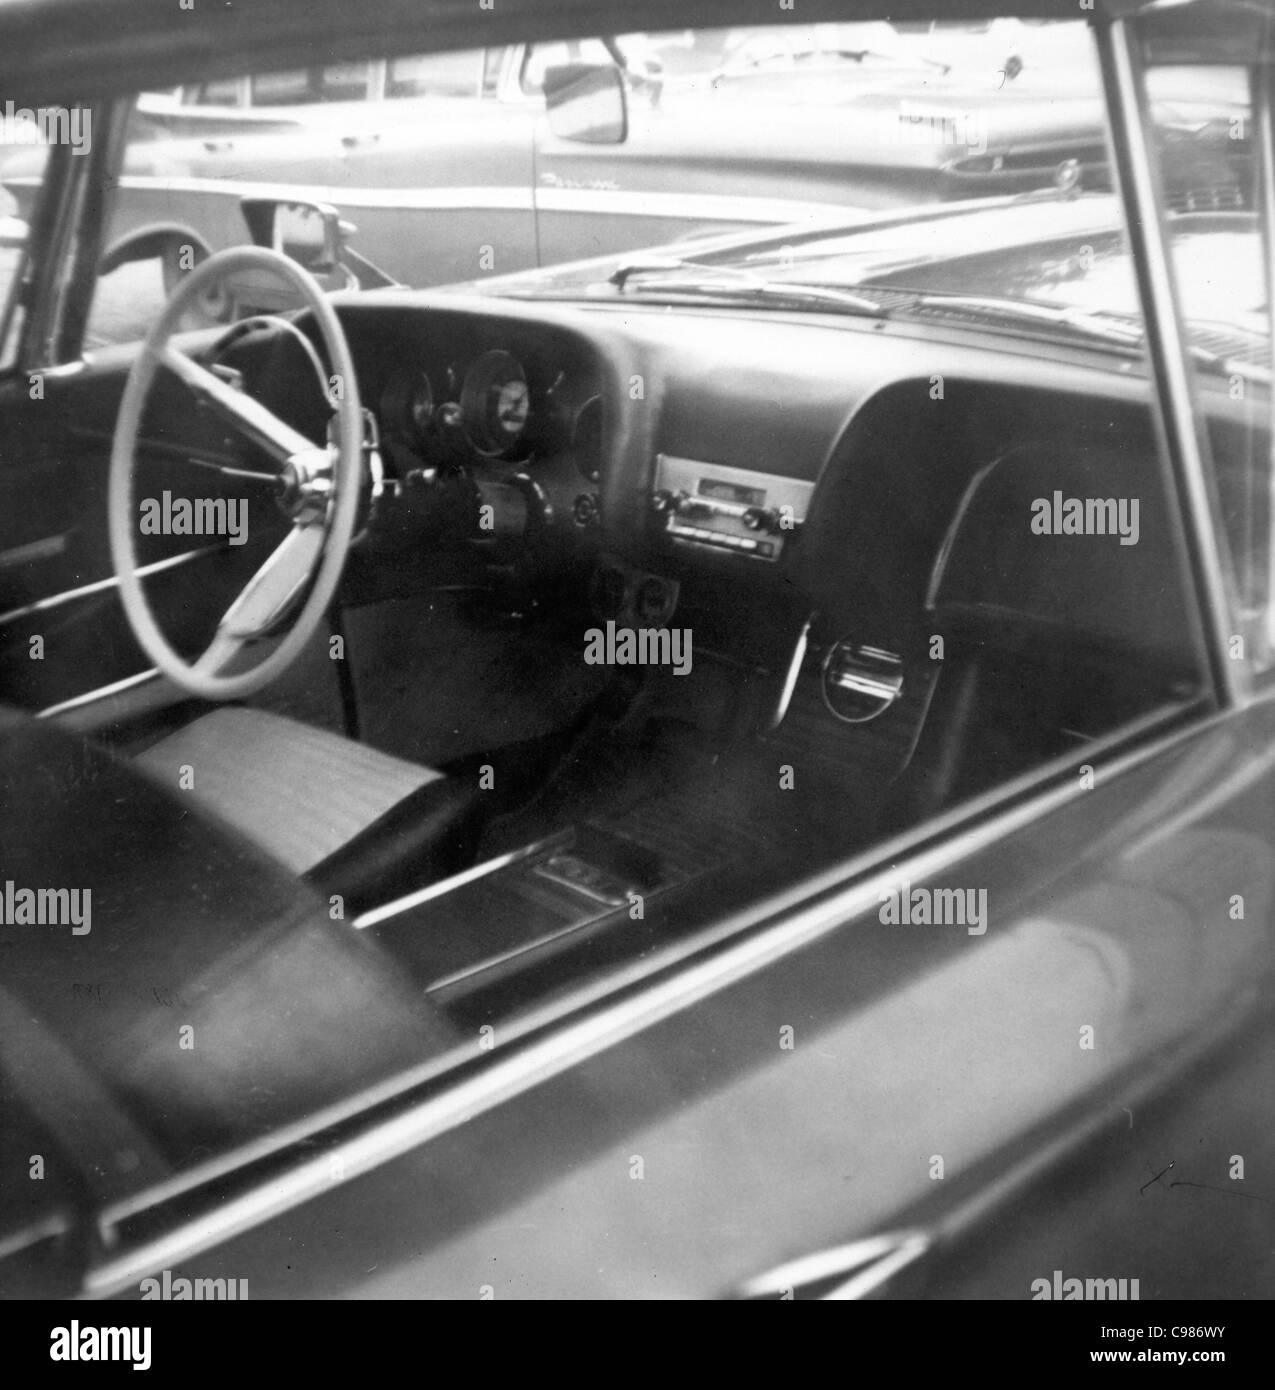 Indiana per la cultura automobilistica degli anni sessanta in bianco e nero del veicolo interni per auto Foto Stock